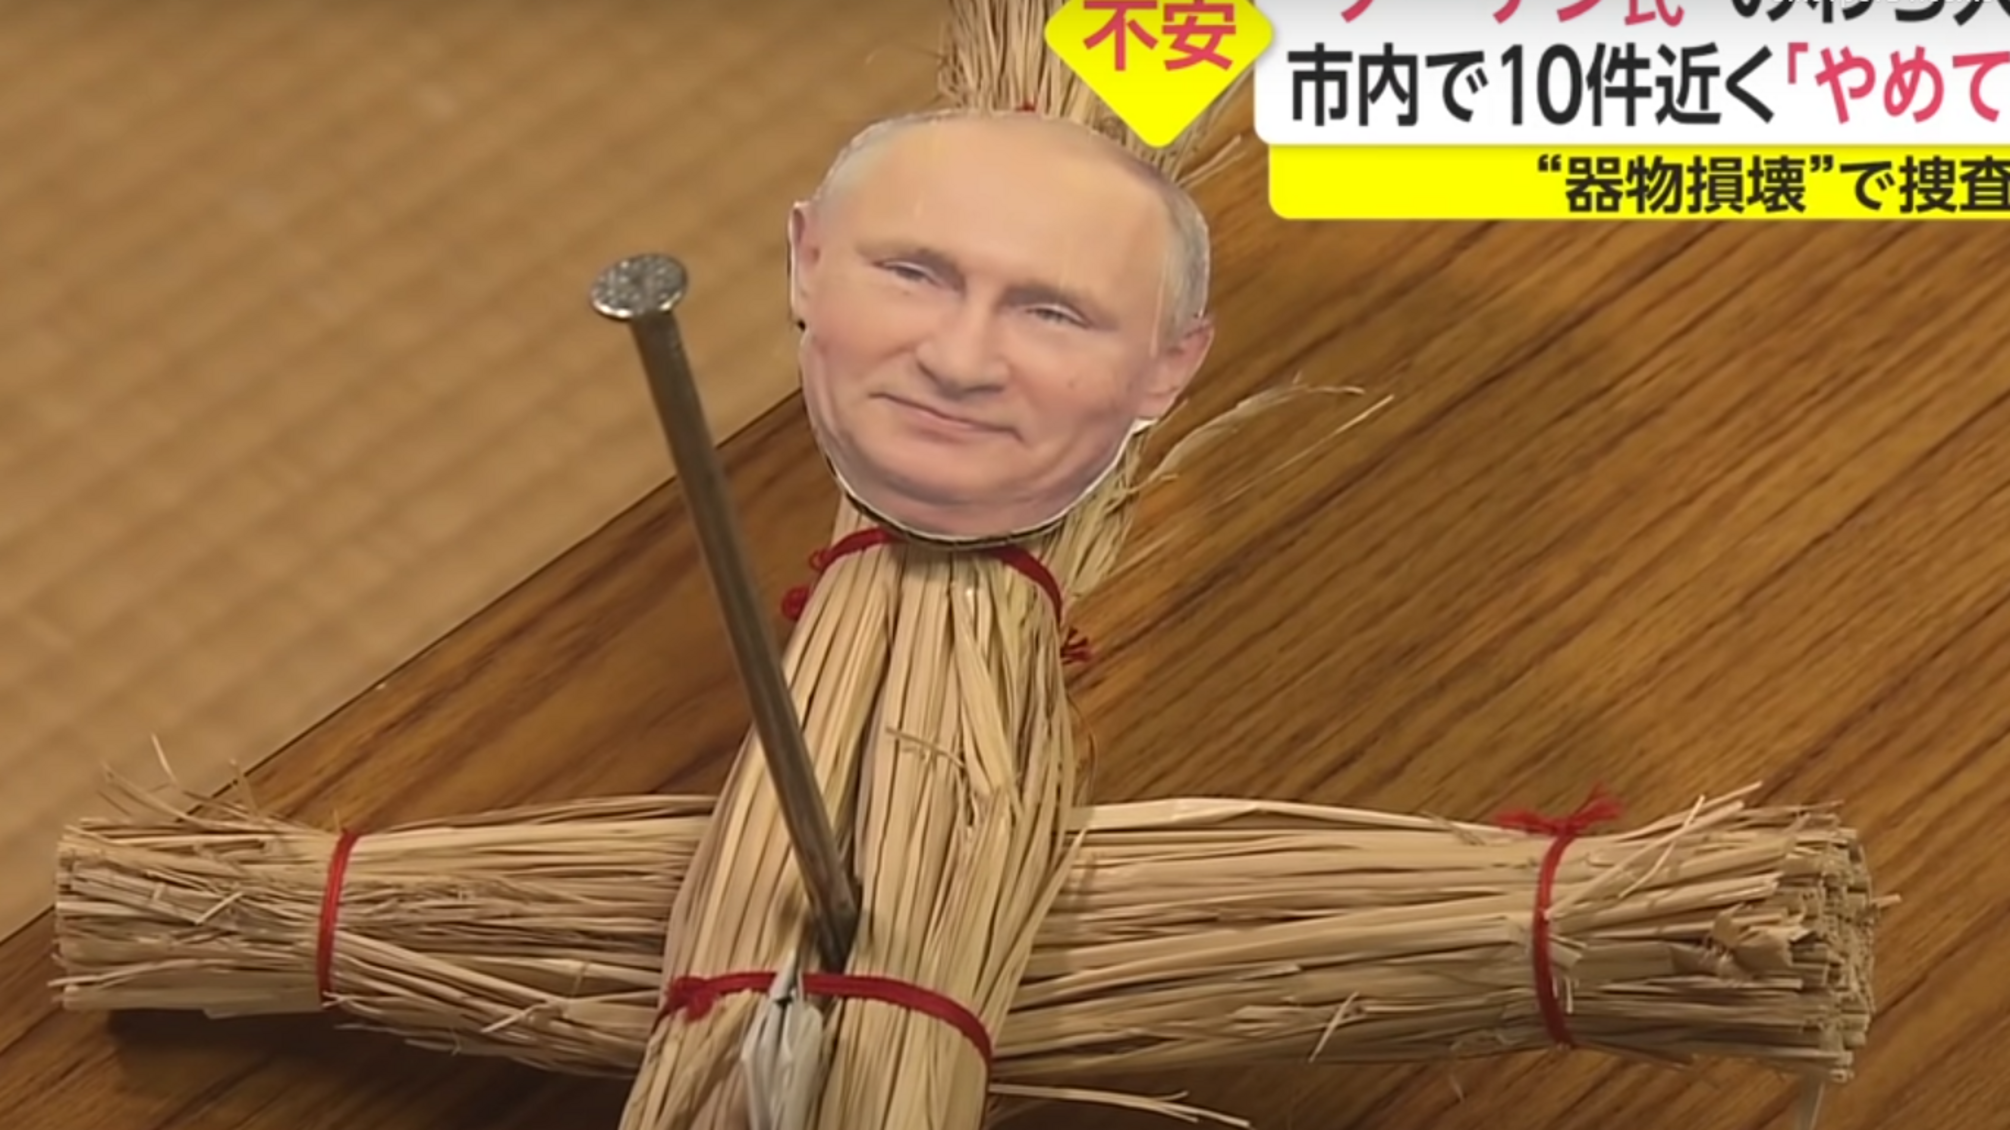 В Японии пытаются проклясть путина с помощью 'куклы вуду' (видео)